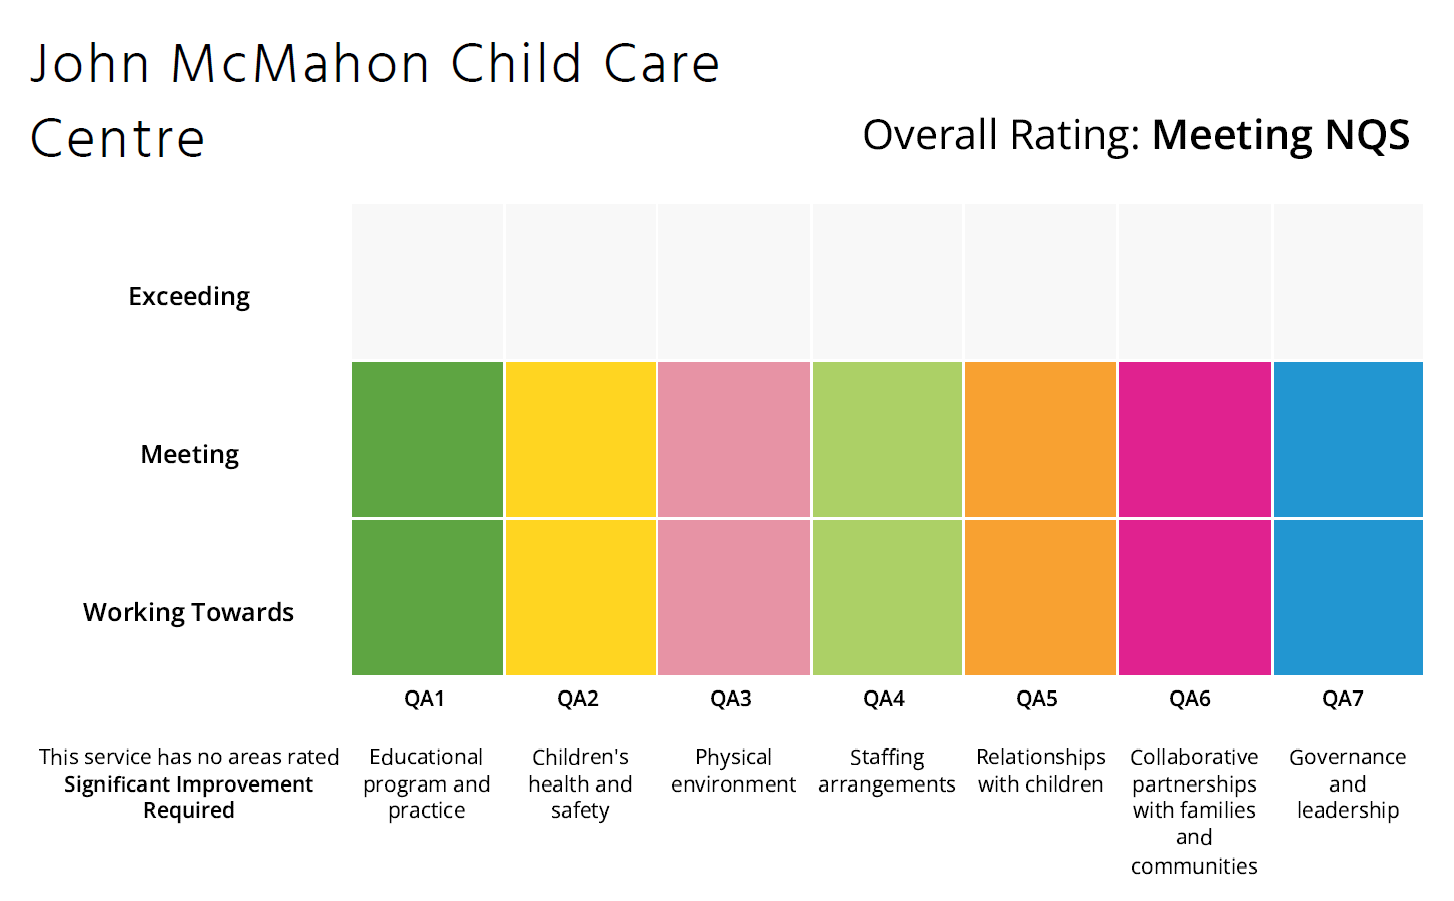 ACECQA Ratings Chart - John McMahon